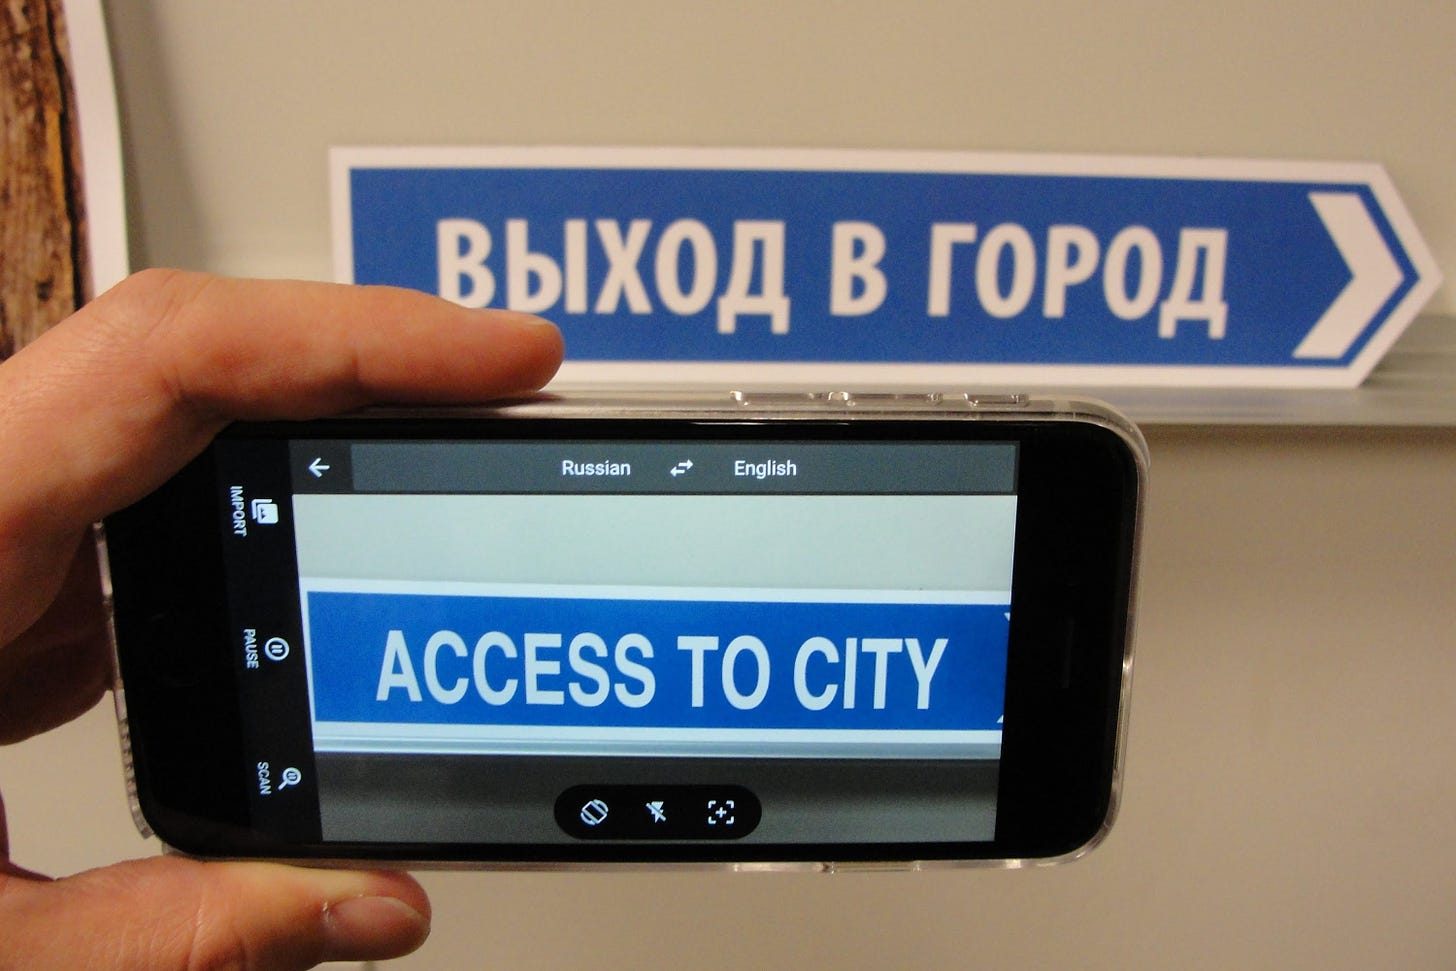 O aplicativo do Google Translator possui uma função de traduzir textos ao vivo com realidade aumentada, utilizando a câmera do dispositivo.